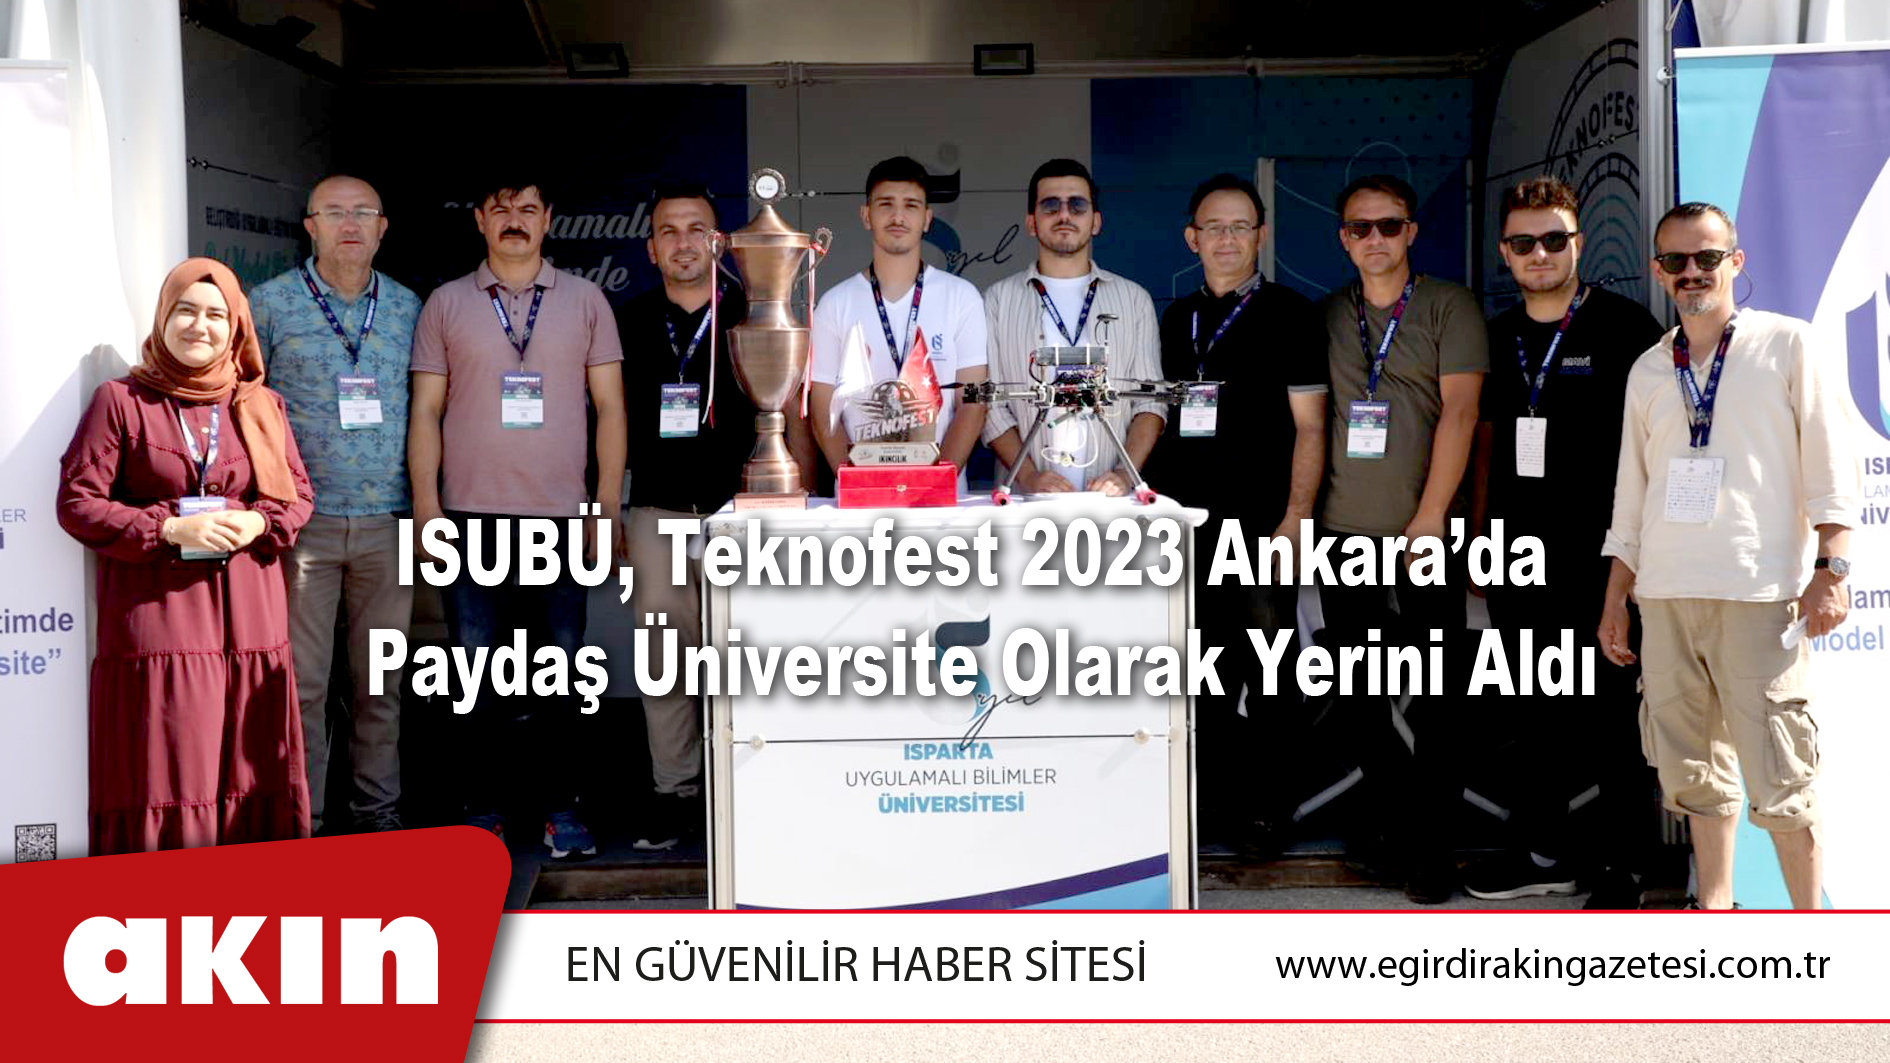 ISUBÜ, Teknofest 2023 Ankara’da Paydaş Üniversite Olarak Yerini Aldı